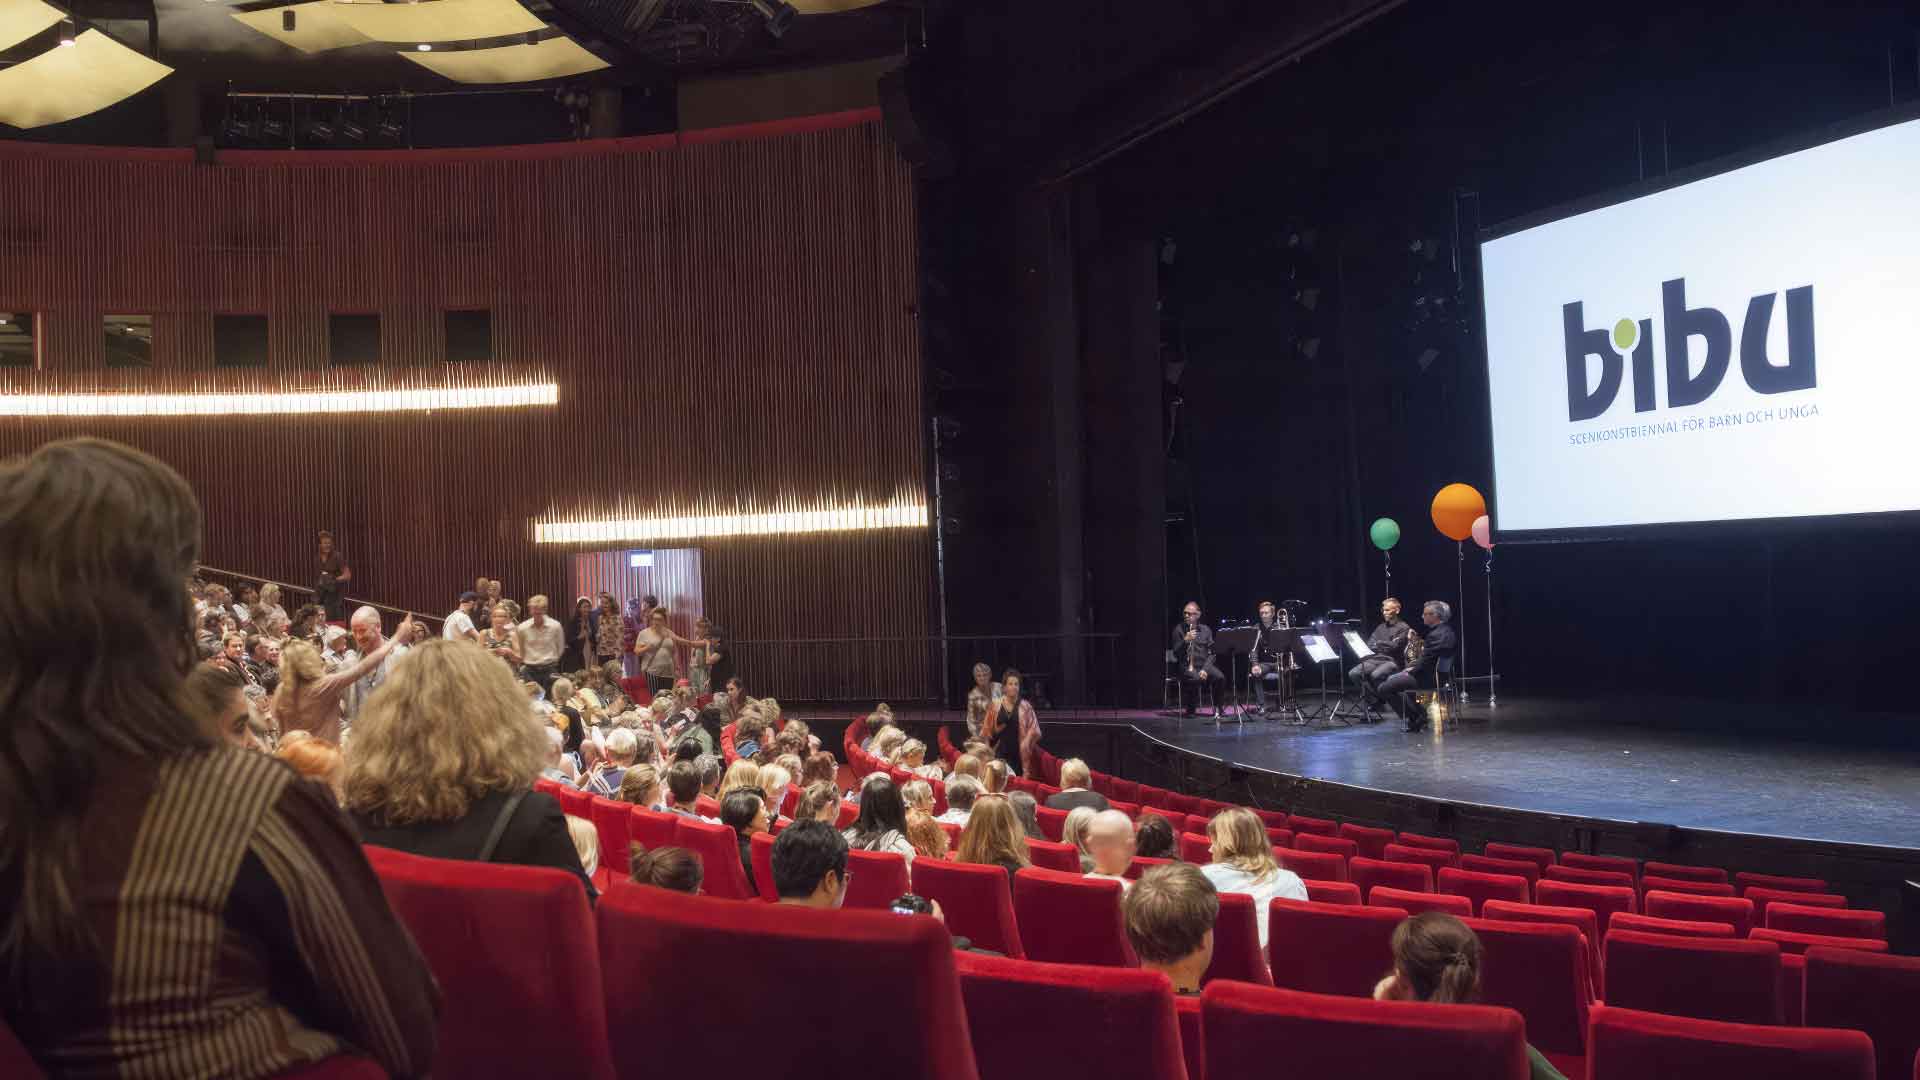 Publik i ett stort auditorium, där några personer sitter på scenen under en skärm med texten "BIBU".